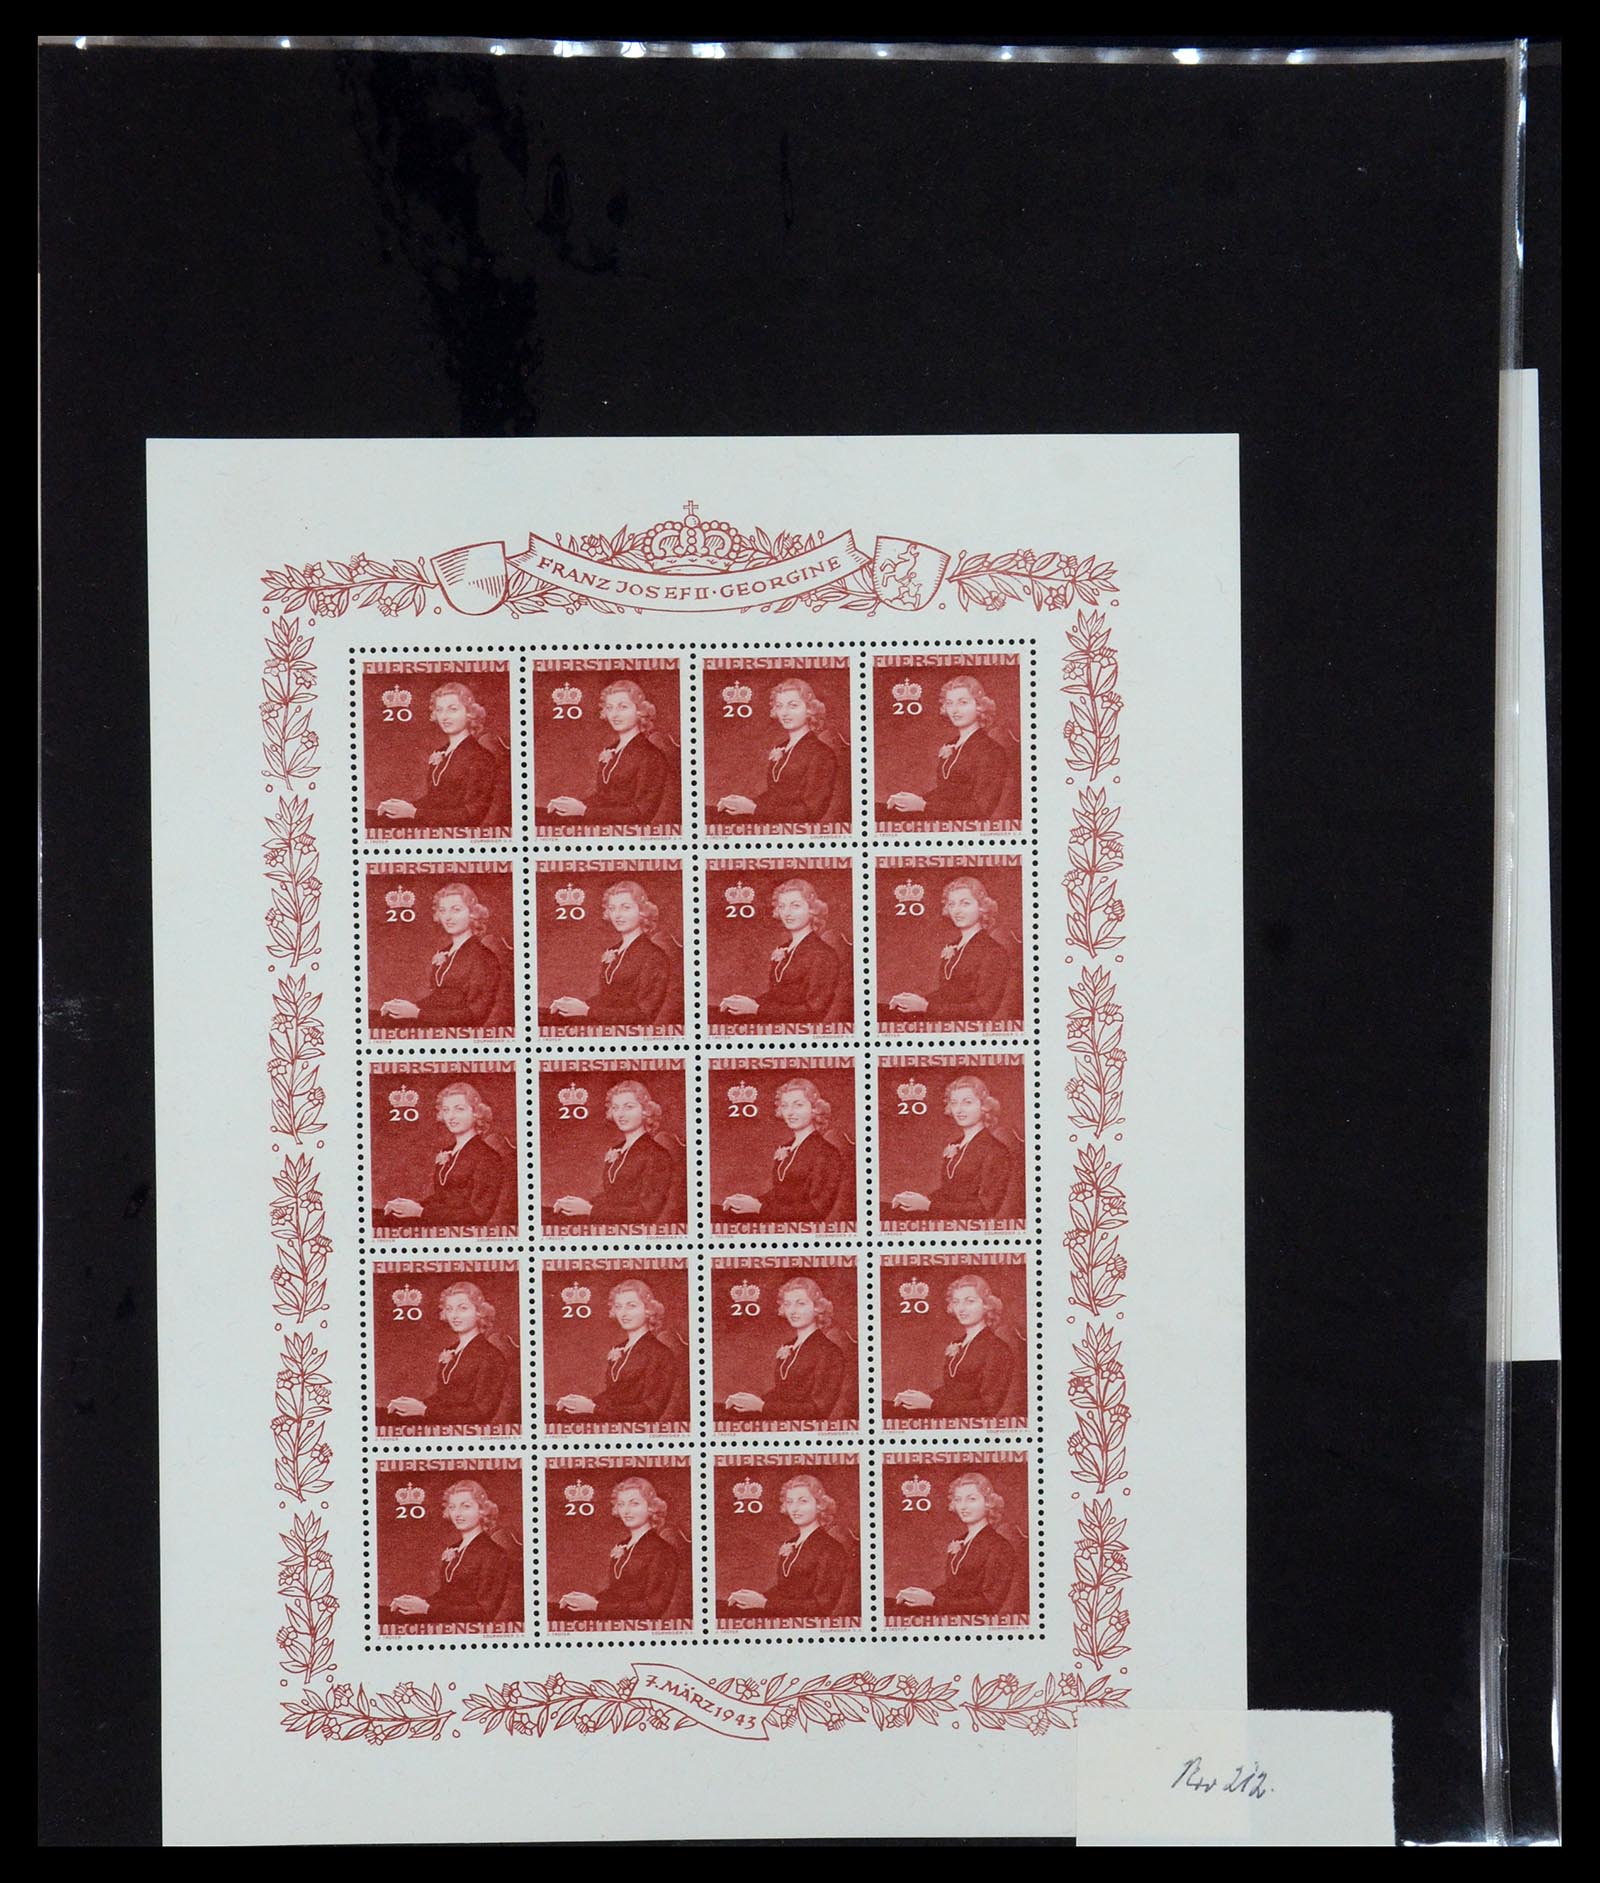 36280 029 - Stamp collection 36280 Liechtenstein souvenir sheets and sheetlets 1934-